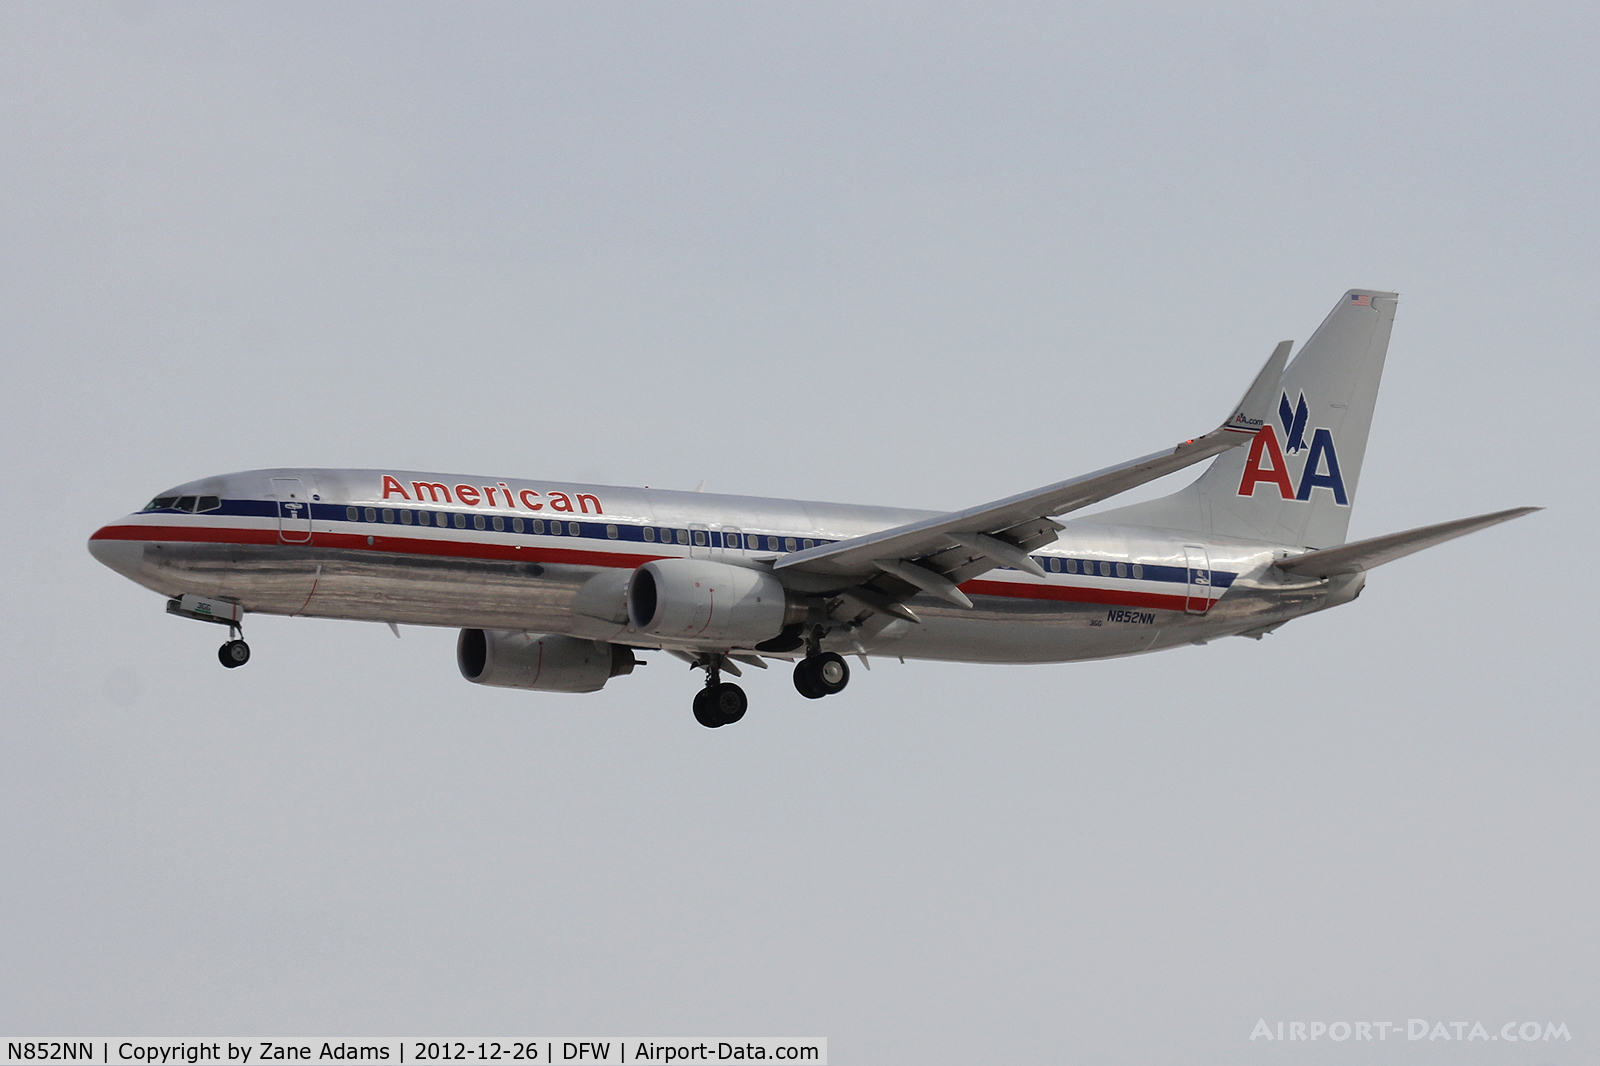 N852NN, 2010 Boeing 737-823 C/N 40581, American Airlines at DFW Airport.